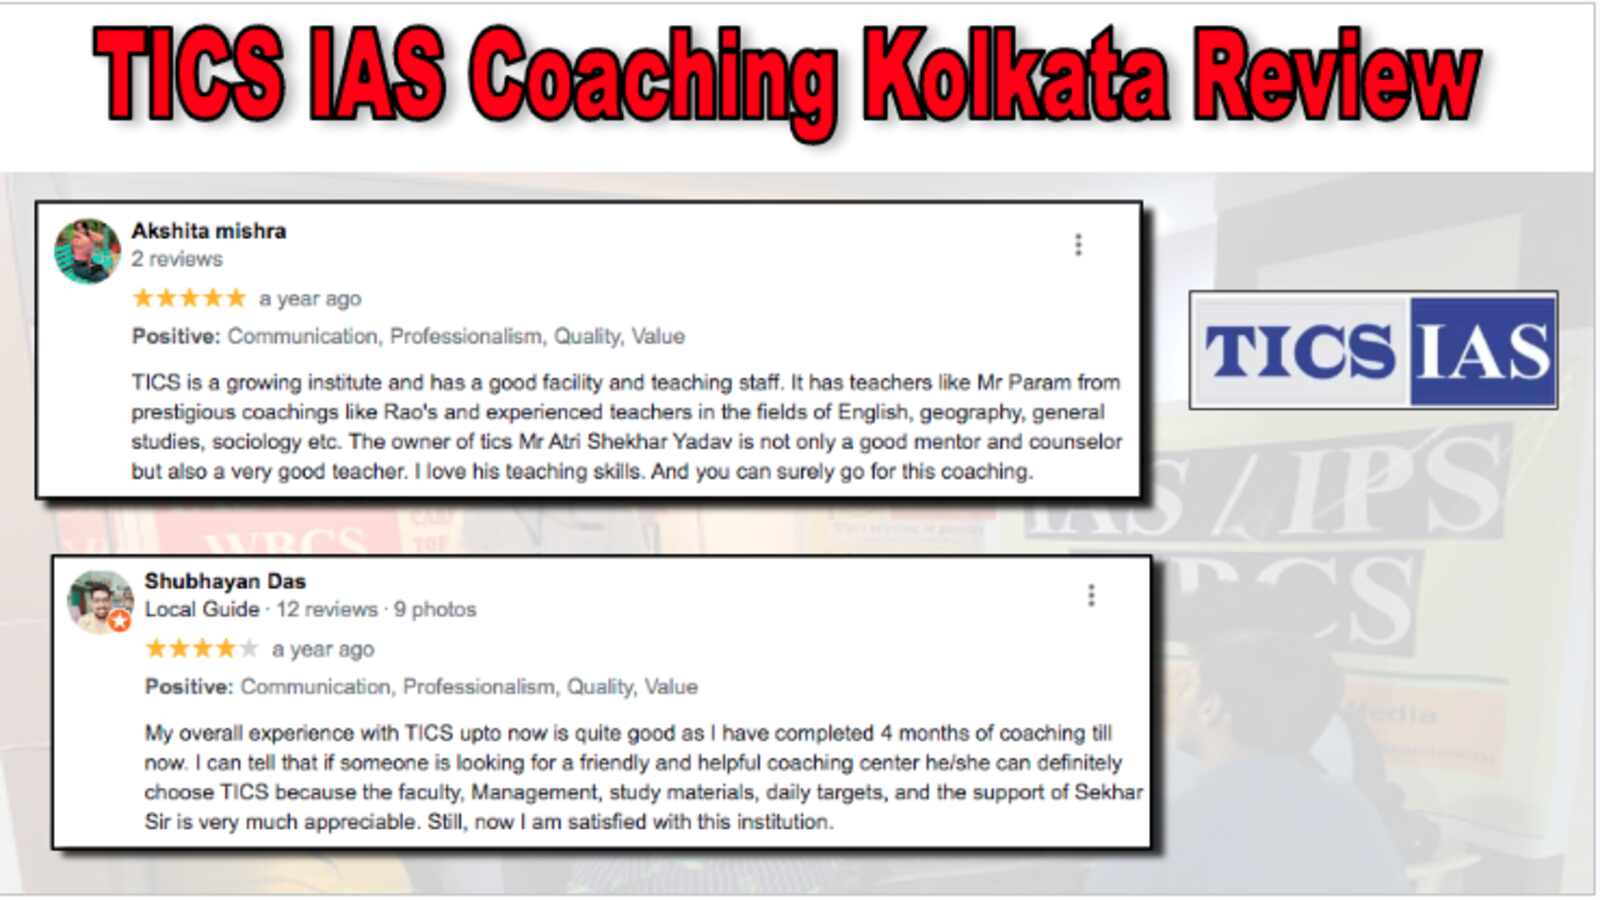 TICS IAS Coaching Kolkata Review